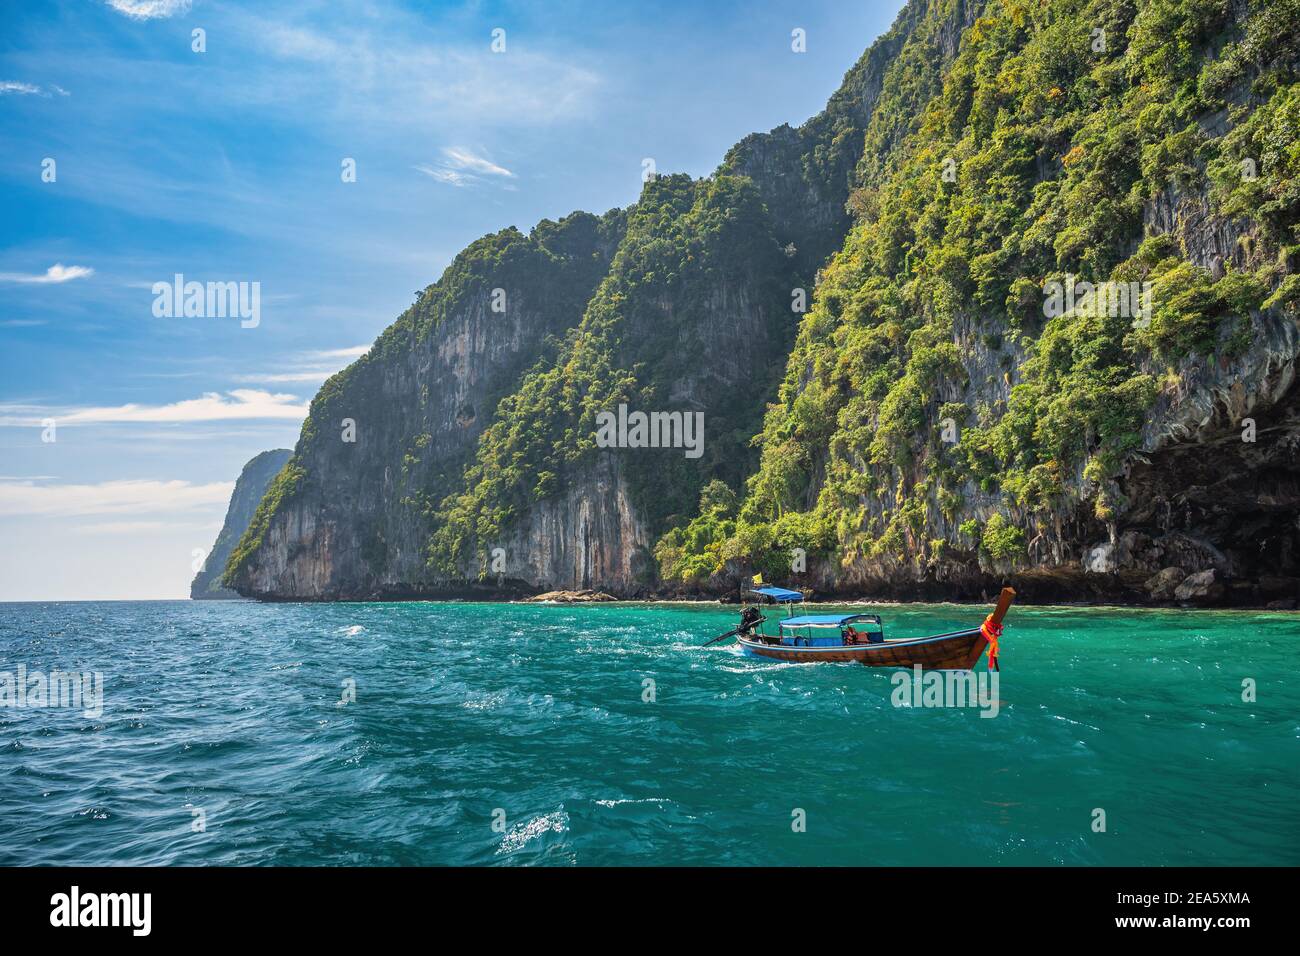 Vue sur les îles tropicales avec bateau à longue queue et eau de mer bleu océan aux îles Phi Phi, paysage naturel de Krabi Thaïlande Banque D'Images